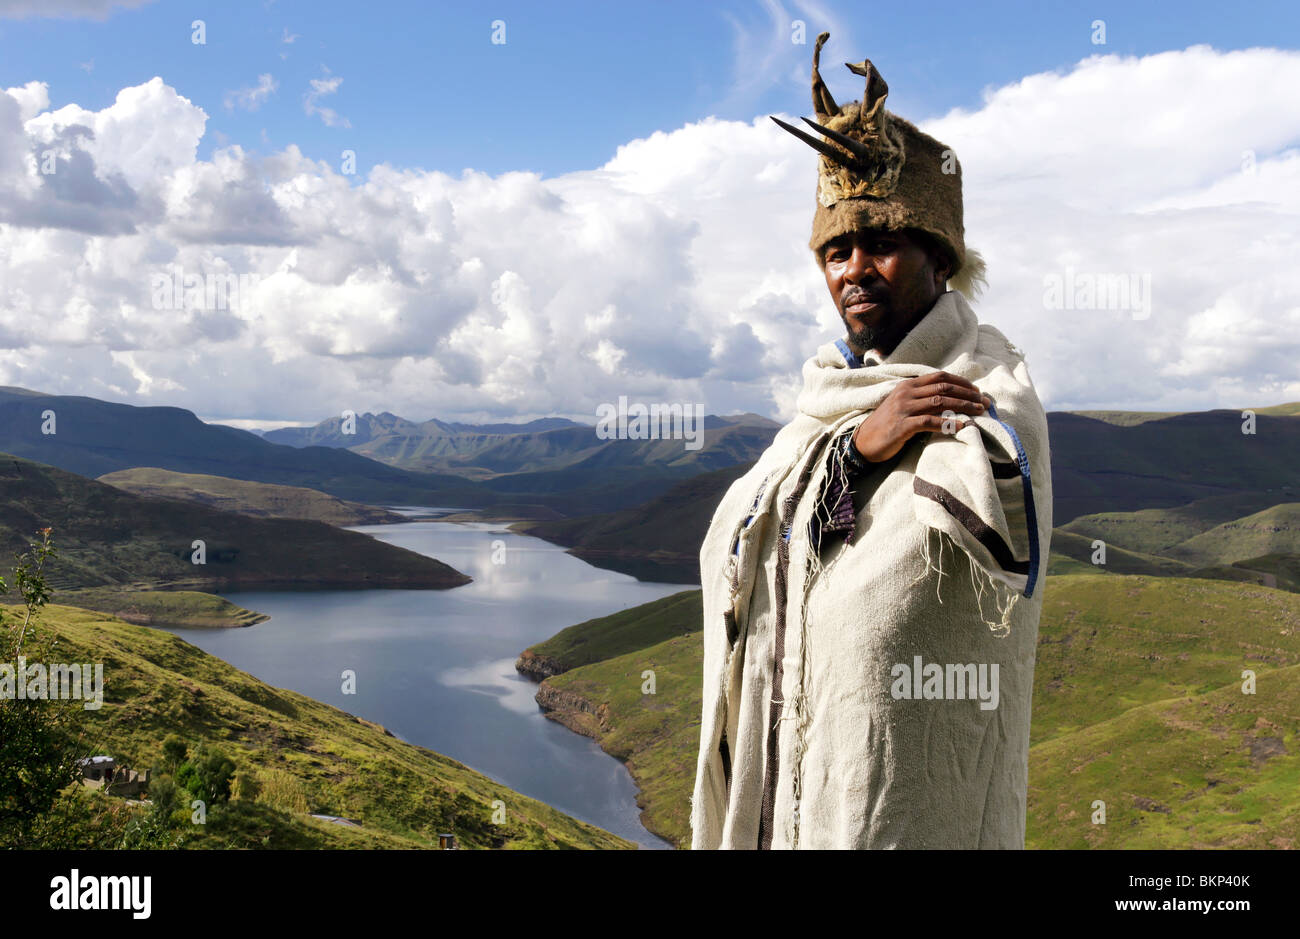 Chef de village dans son pansement traditionnel au-dessus du lac du barrage de Mohale dans les hautes terres du Lesotho Banque D'Images